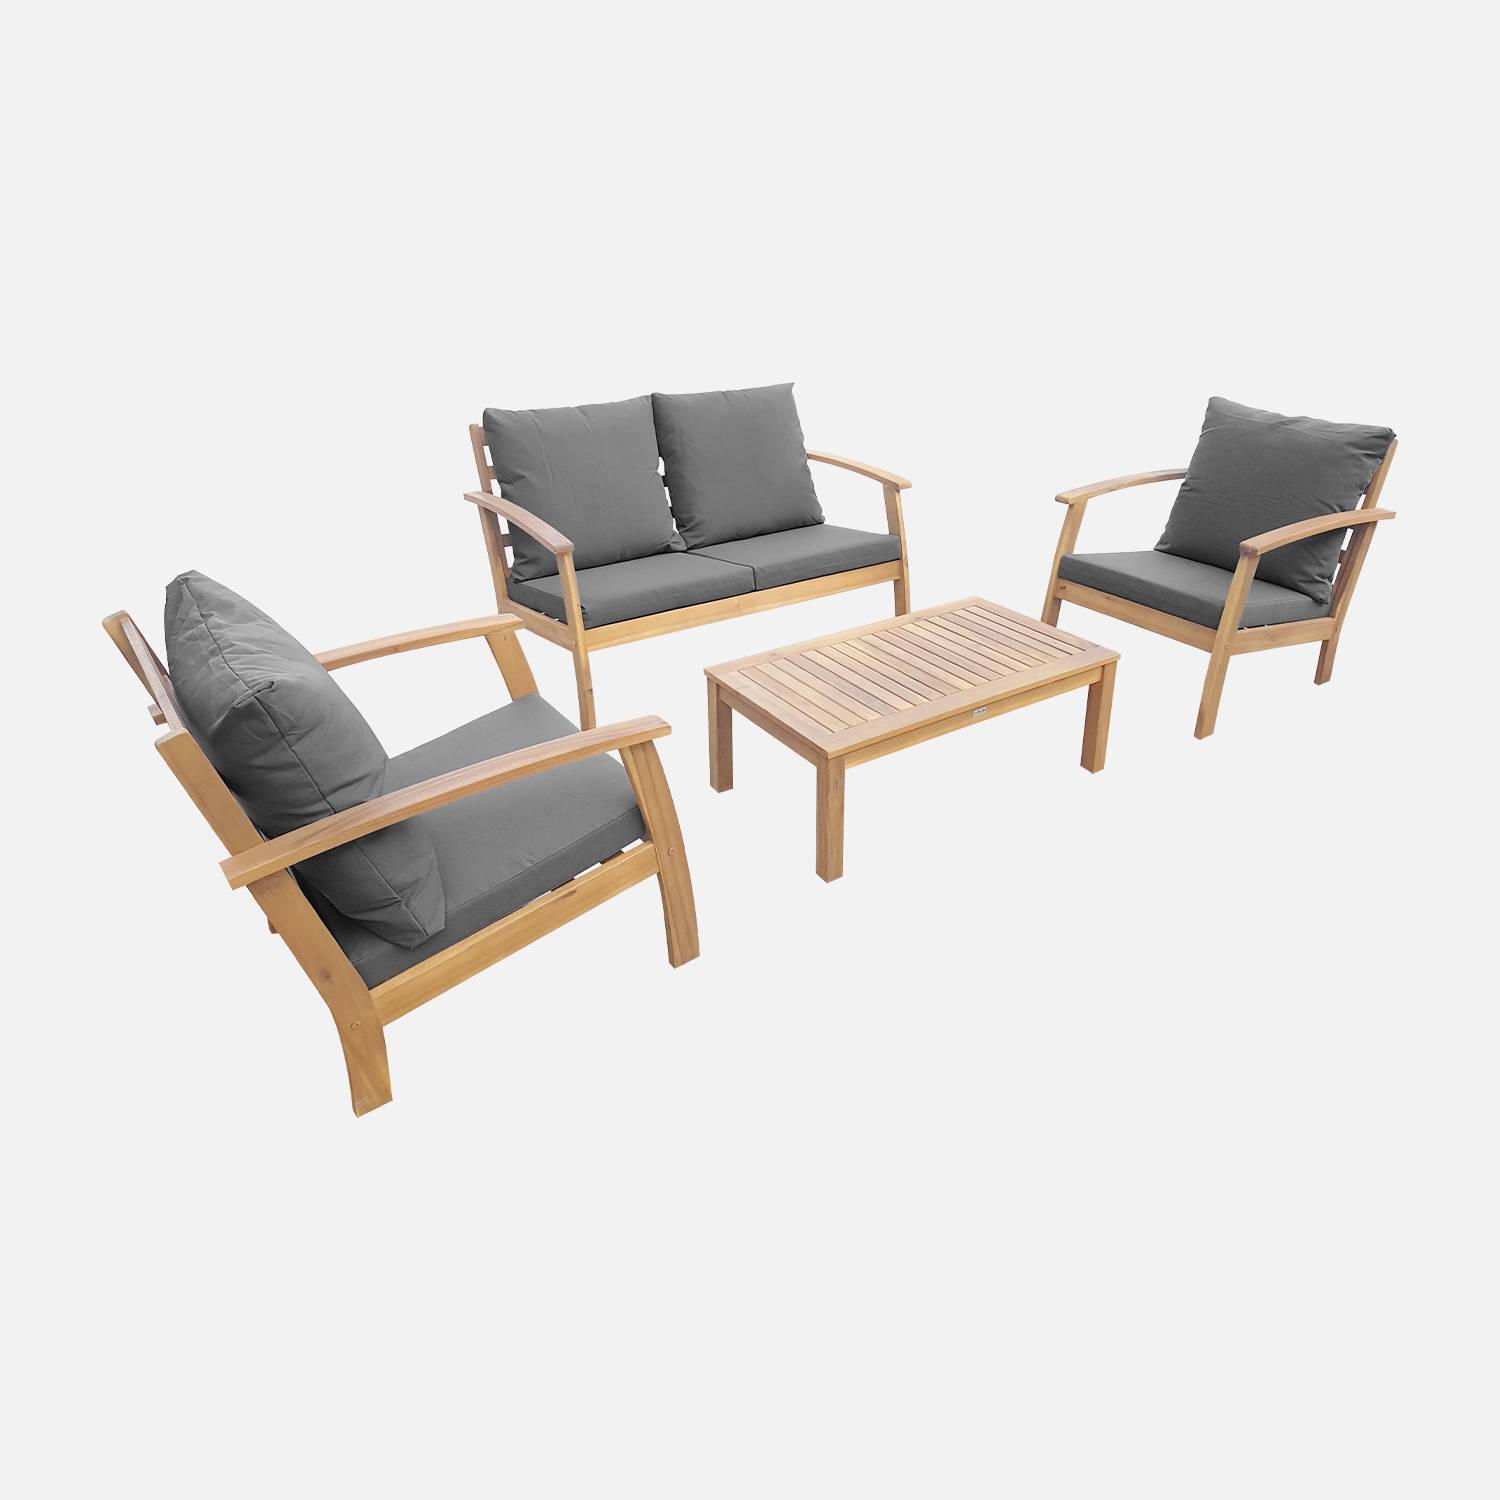 Salon de jardin en bois 4 places - Ushuaïa - Coussins gris, canapé, fauteuils et table basse en acacia, design | sweeek